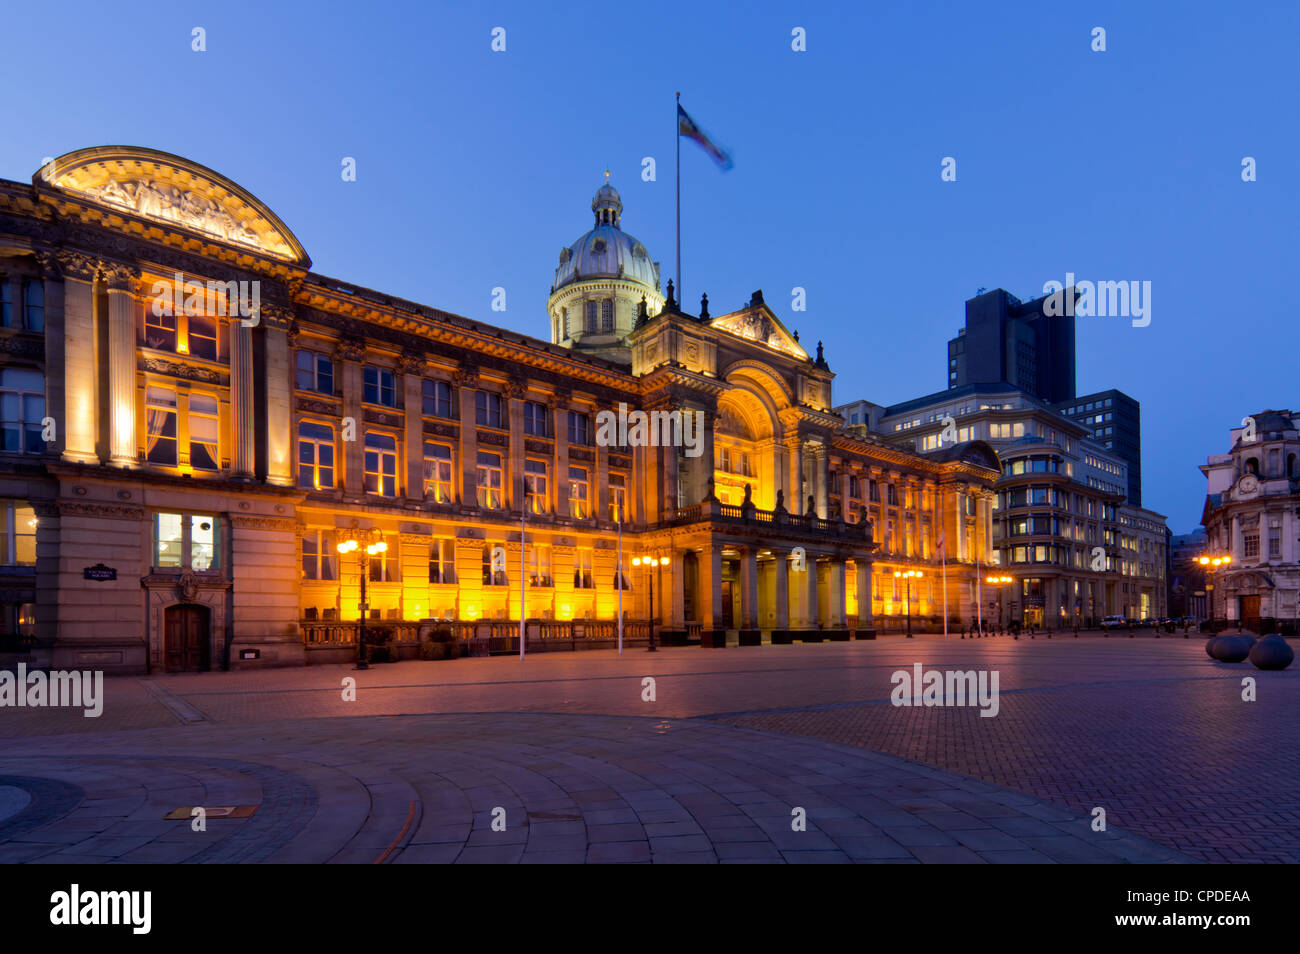 Chambre du Conseil et la Place Victoria au crépuscule, Birmingham, Midlands, Angleterre, Royaume-Uni, Europe Banque D'Images